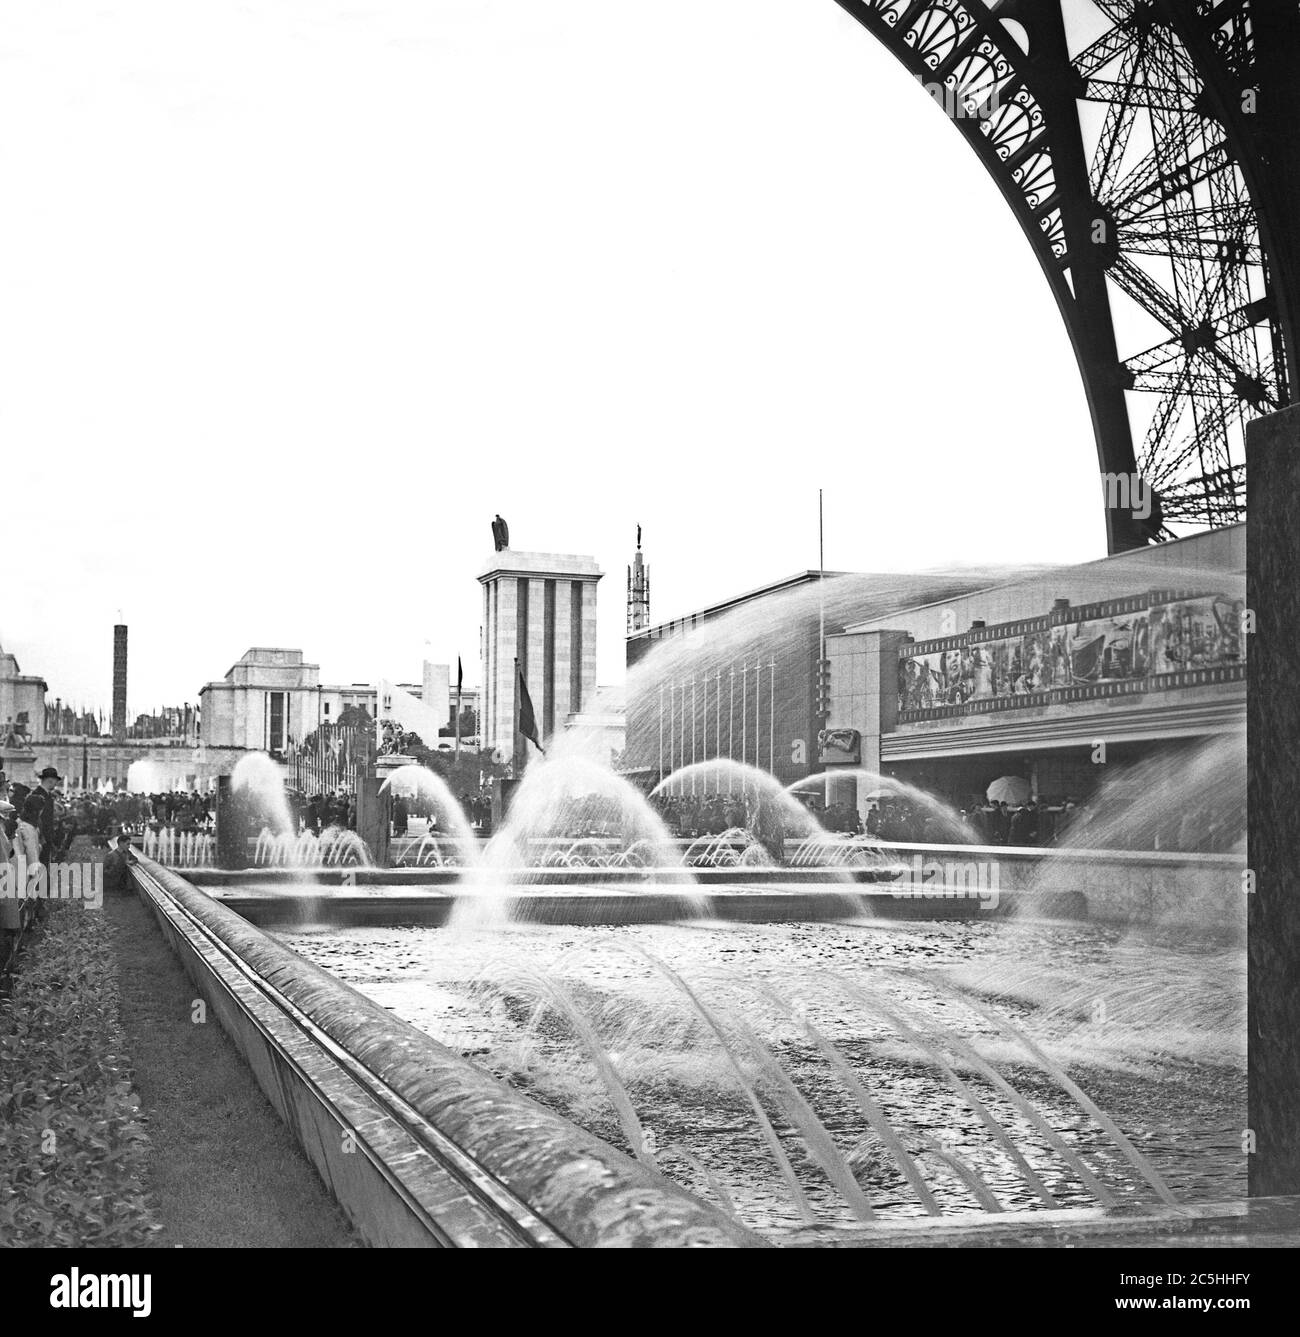 Vue sur l'exposition universelle de 1937 qui s'est tenue à Paris, en France, en regardant au nord depuis le bas de la Tour Eiffel. Derrière les fontaines à droite se trouve le pavillon du cinéma et de la photographie, derrière lequel se trouve le modeste pavillon belge. Au-delà, de l'autre côté de la Seine, dans les 'Sieces Etrangeres' du site se trouve le pavillon allemand. L'architecte d'Hitler Albert Speer a conçu le pavillon allemand. Le pavillon de Speer était dominé par la grande tour couronnée des symboles de l'État nazi, de l'aigle et de la croix gammée. Banque D'Images